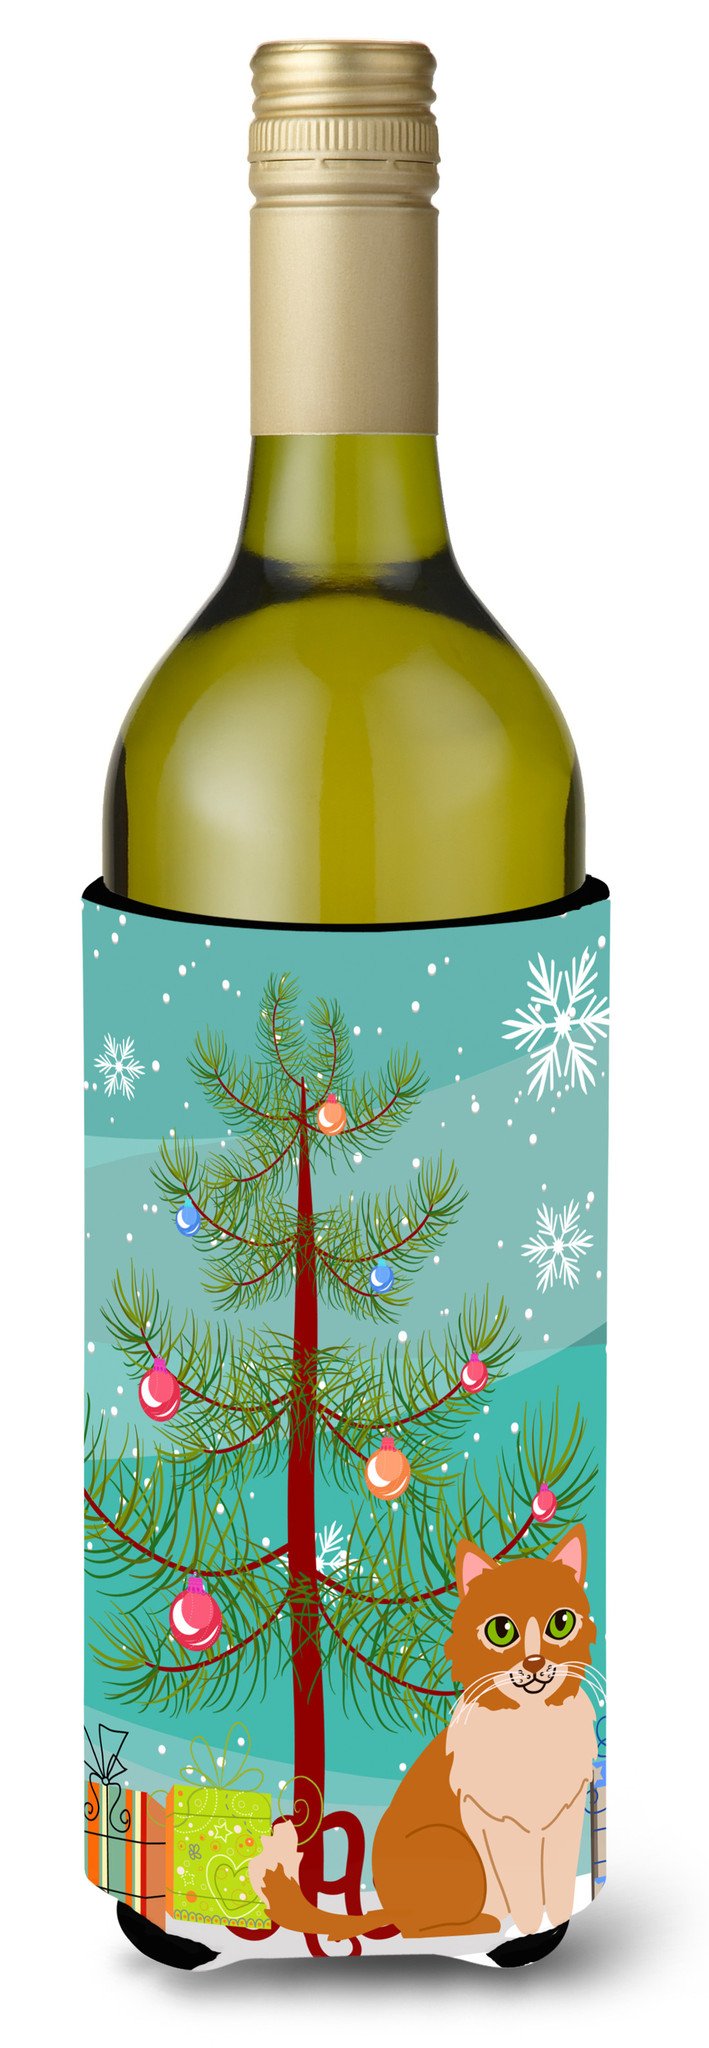 Merry Christmas Tree Ural Rex Cat Wine Bottle Beverge Insulator Hugger BB4435LITERK by Caroline&#39;s Treasures